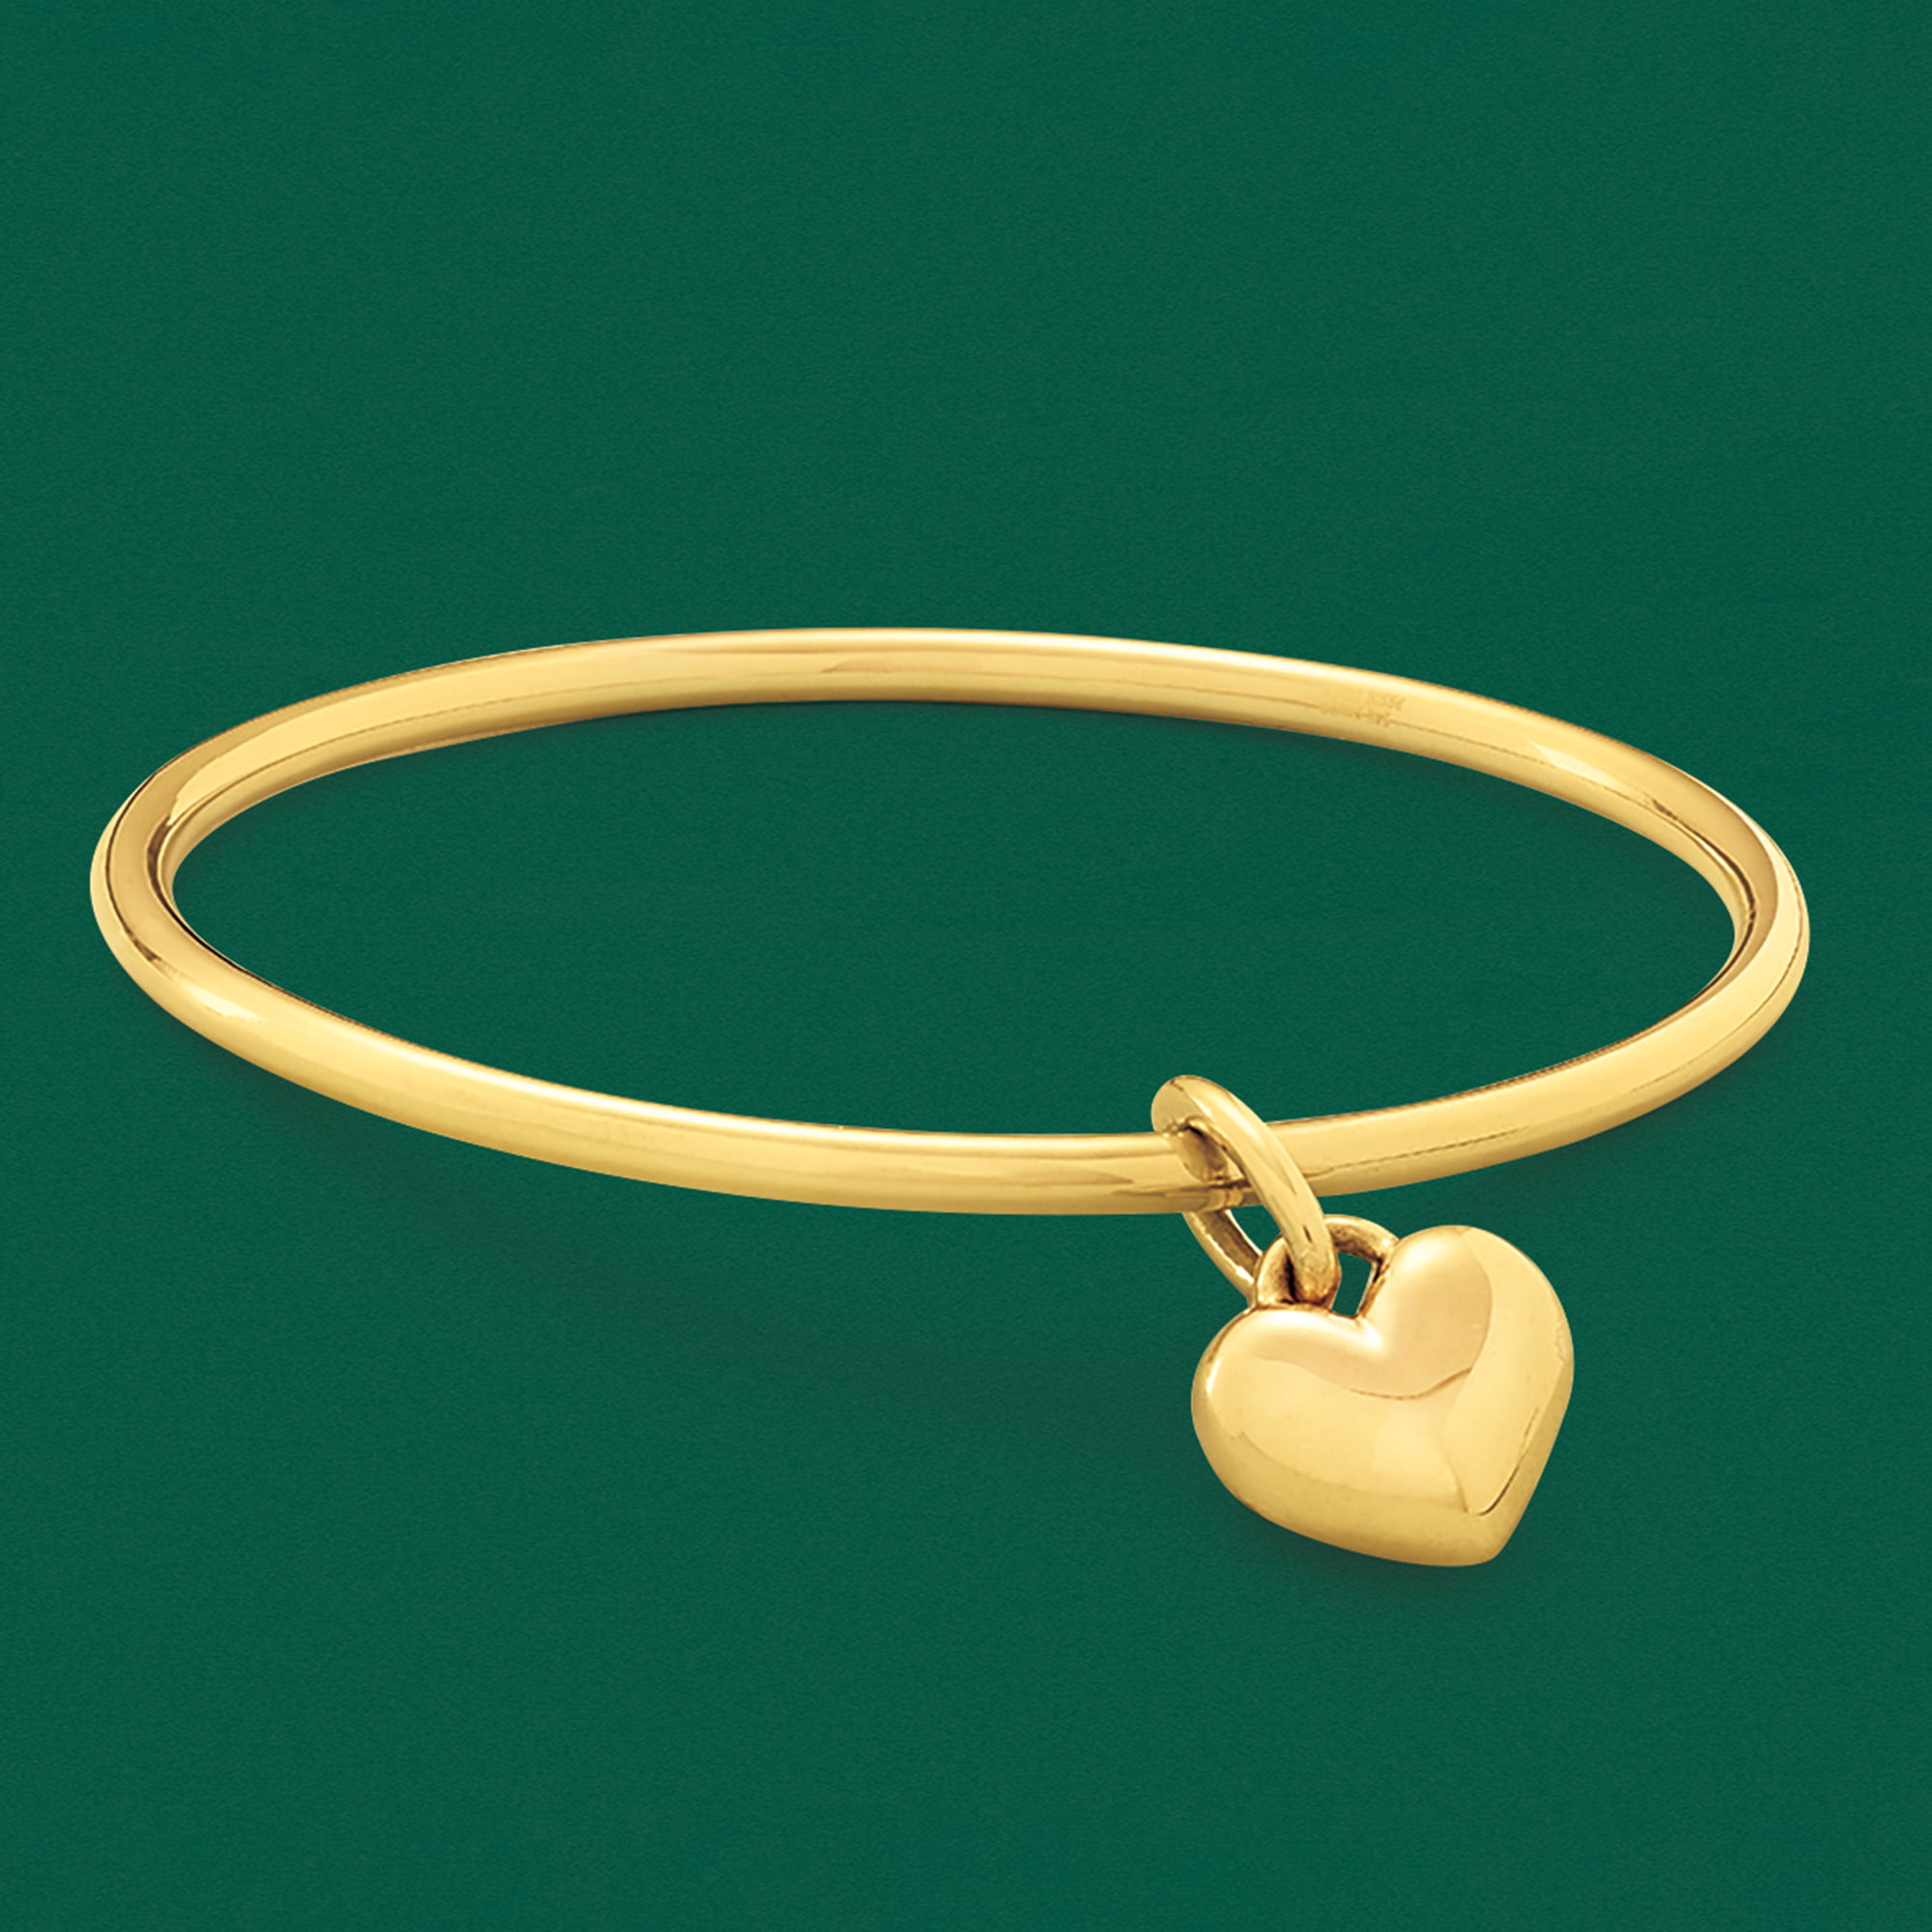 Ross-Simons Italian Andiamo 14kt Yellow Gold Over Resin Heart Charm Bracelet 